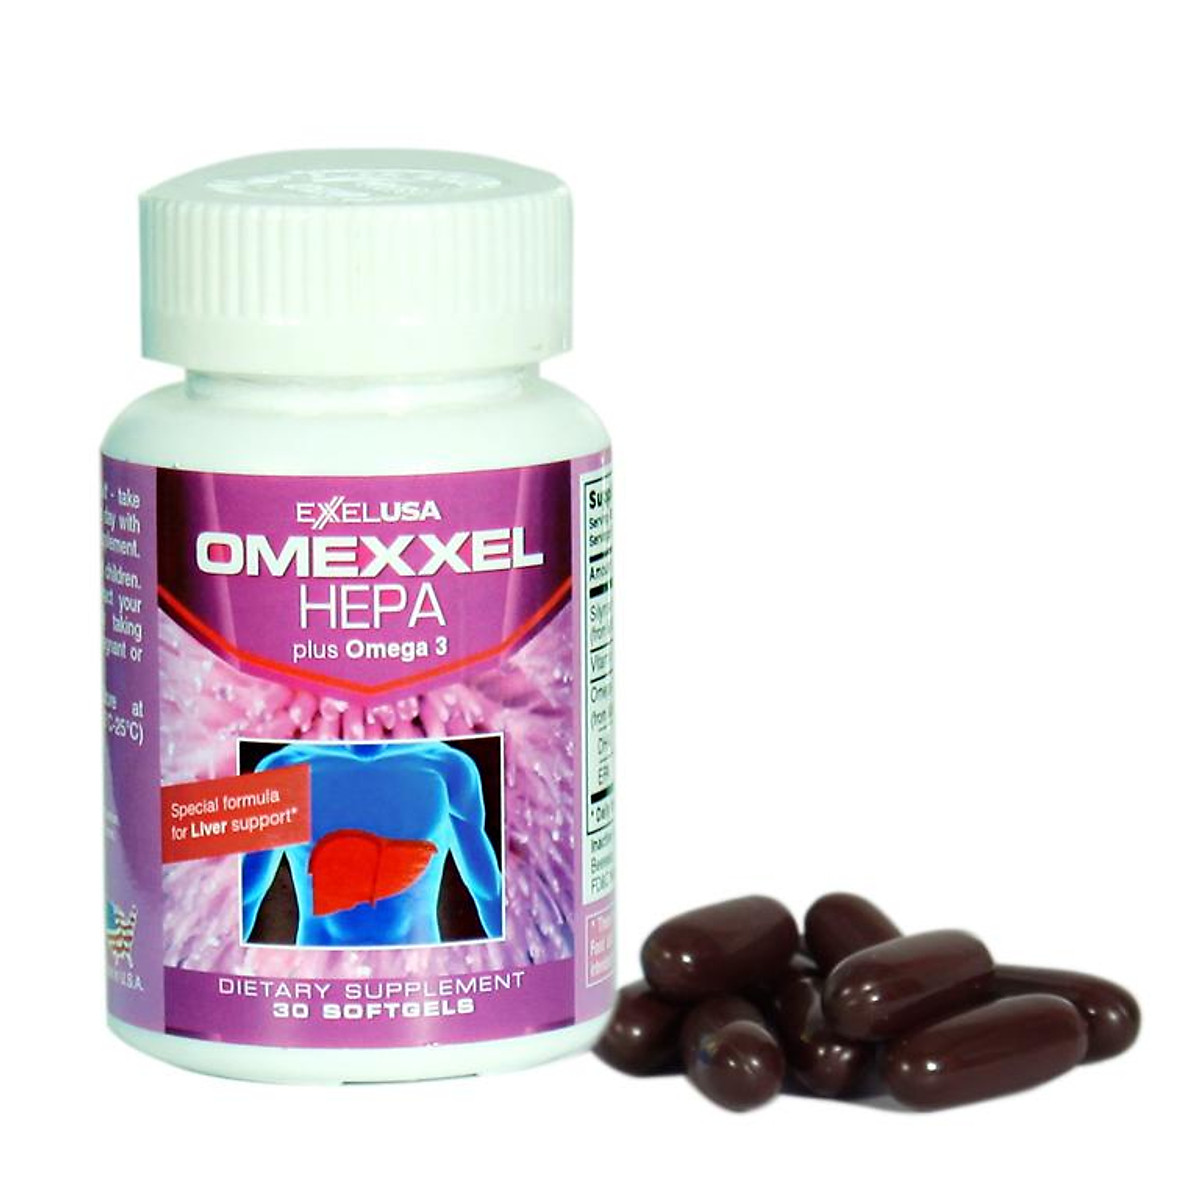 Omexxel Hepa - Sản phẩm mát gan của Mỹ